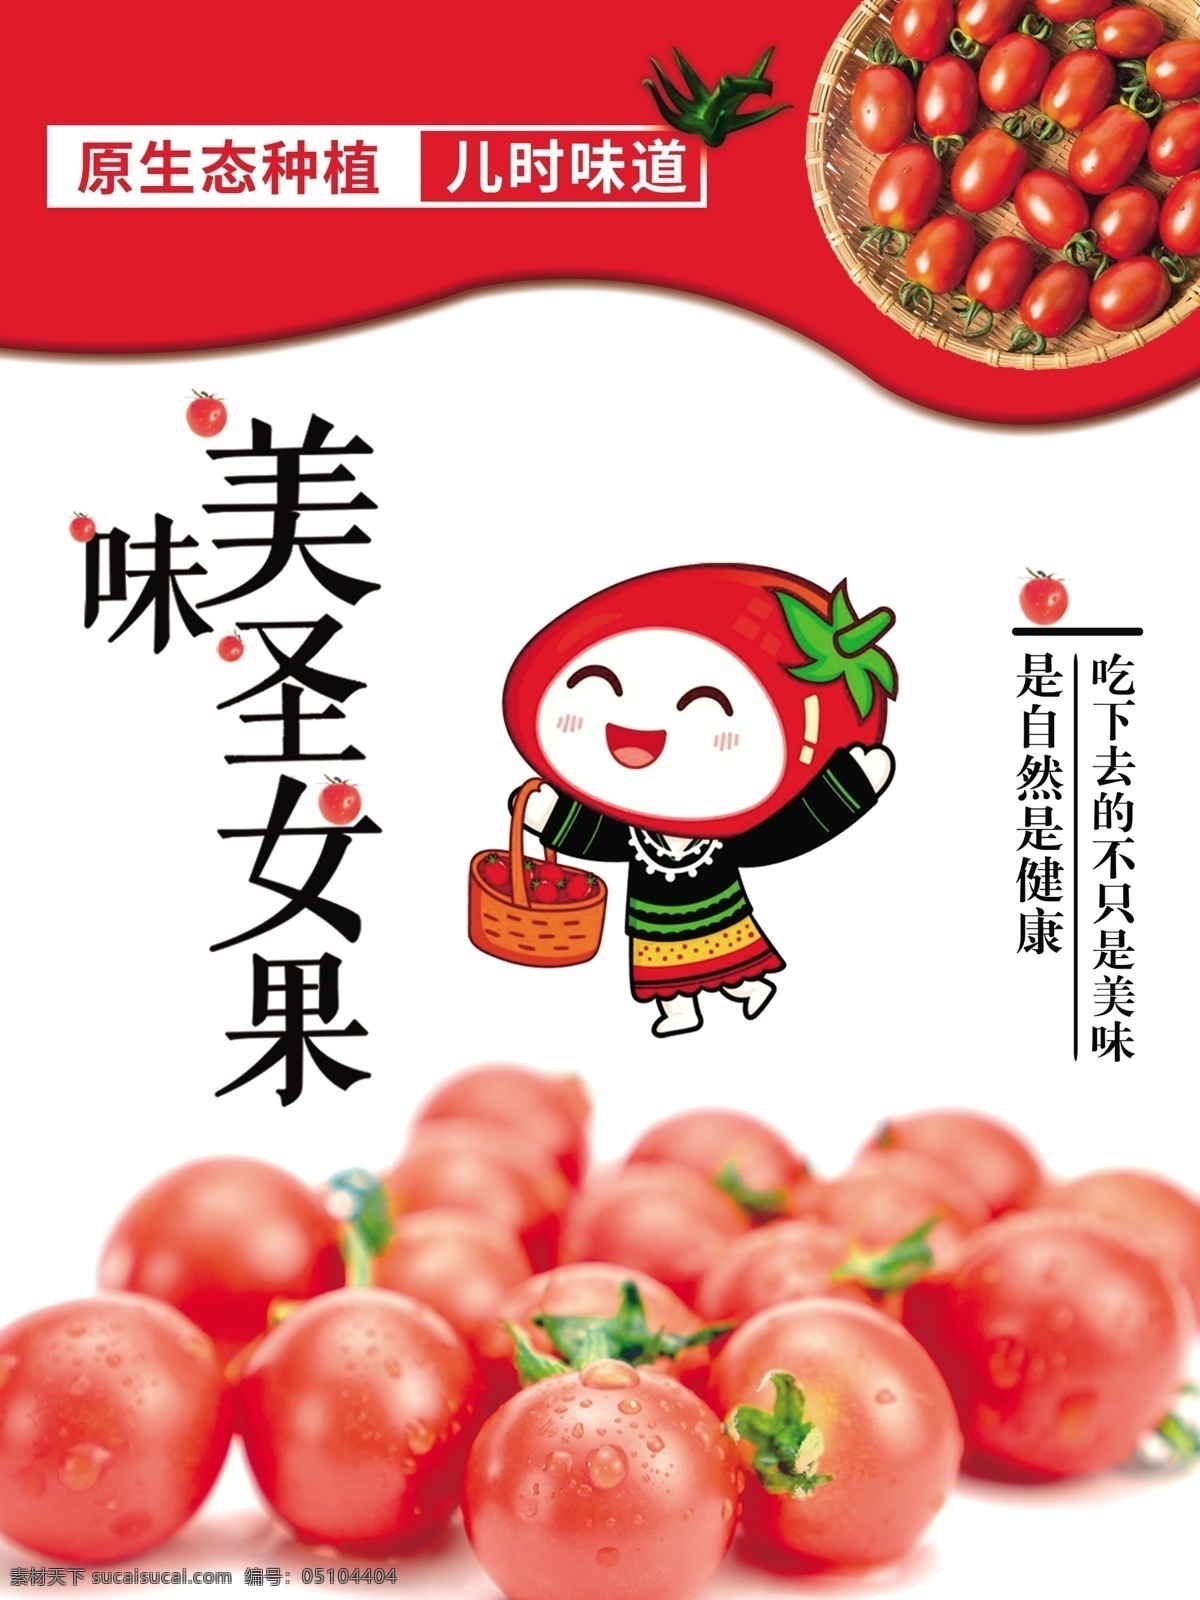 圣女 果 包装设计 主 图 海报 圣女果 小西红柿 番茄 产品设计 粉色包装